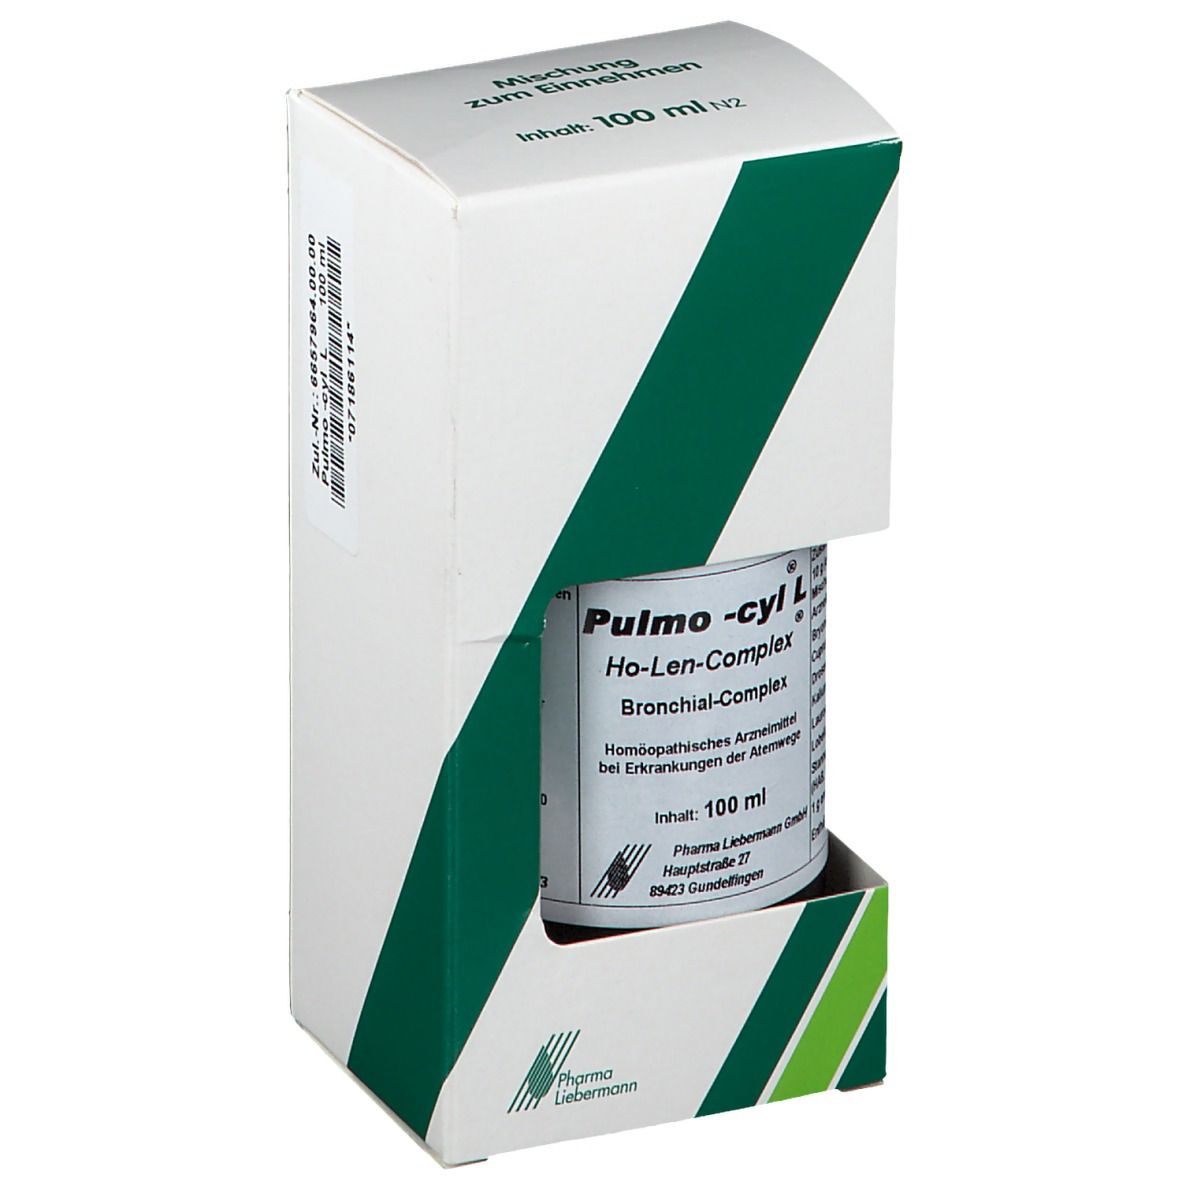 Pulmo-cyl® L